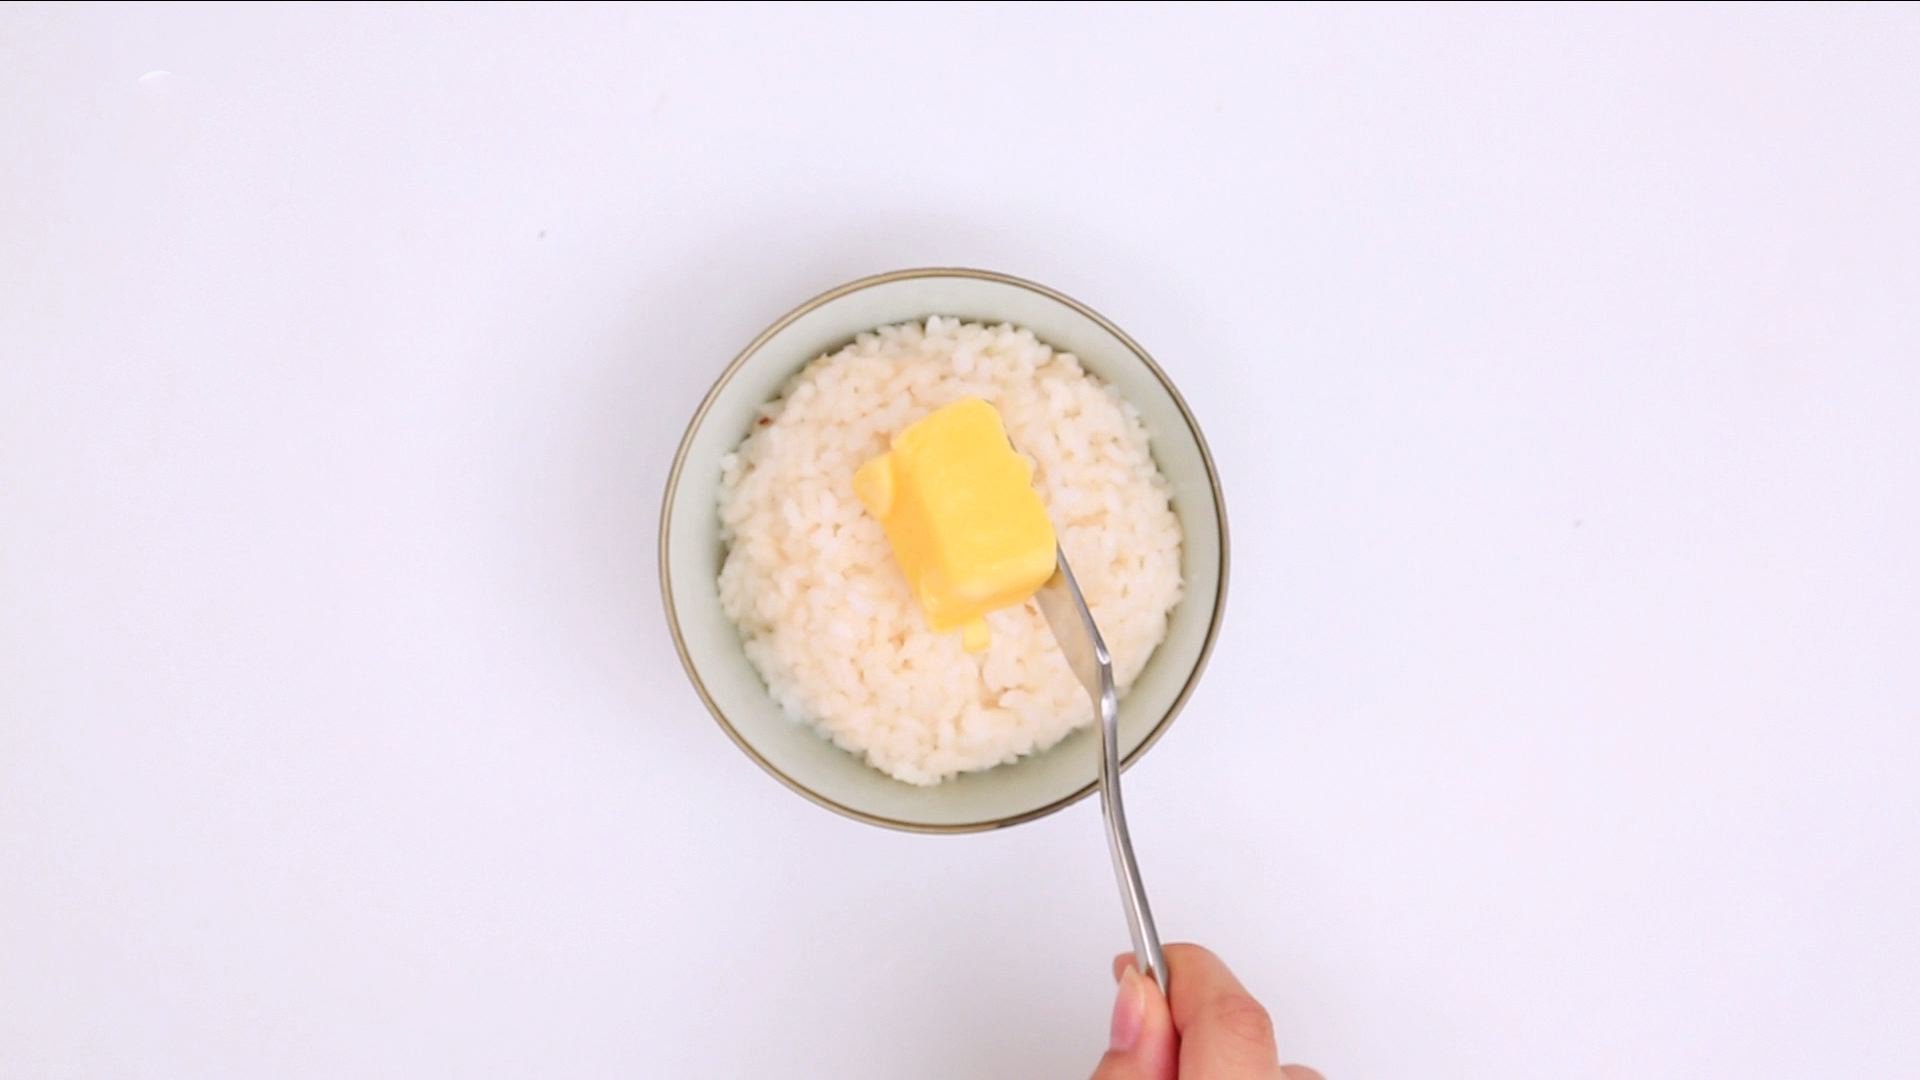 Cơm bơ đơn giản làm nhanh lại siêu ngon cho bữa sáng - Ảnh 1.